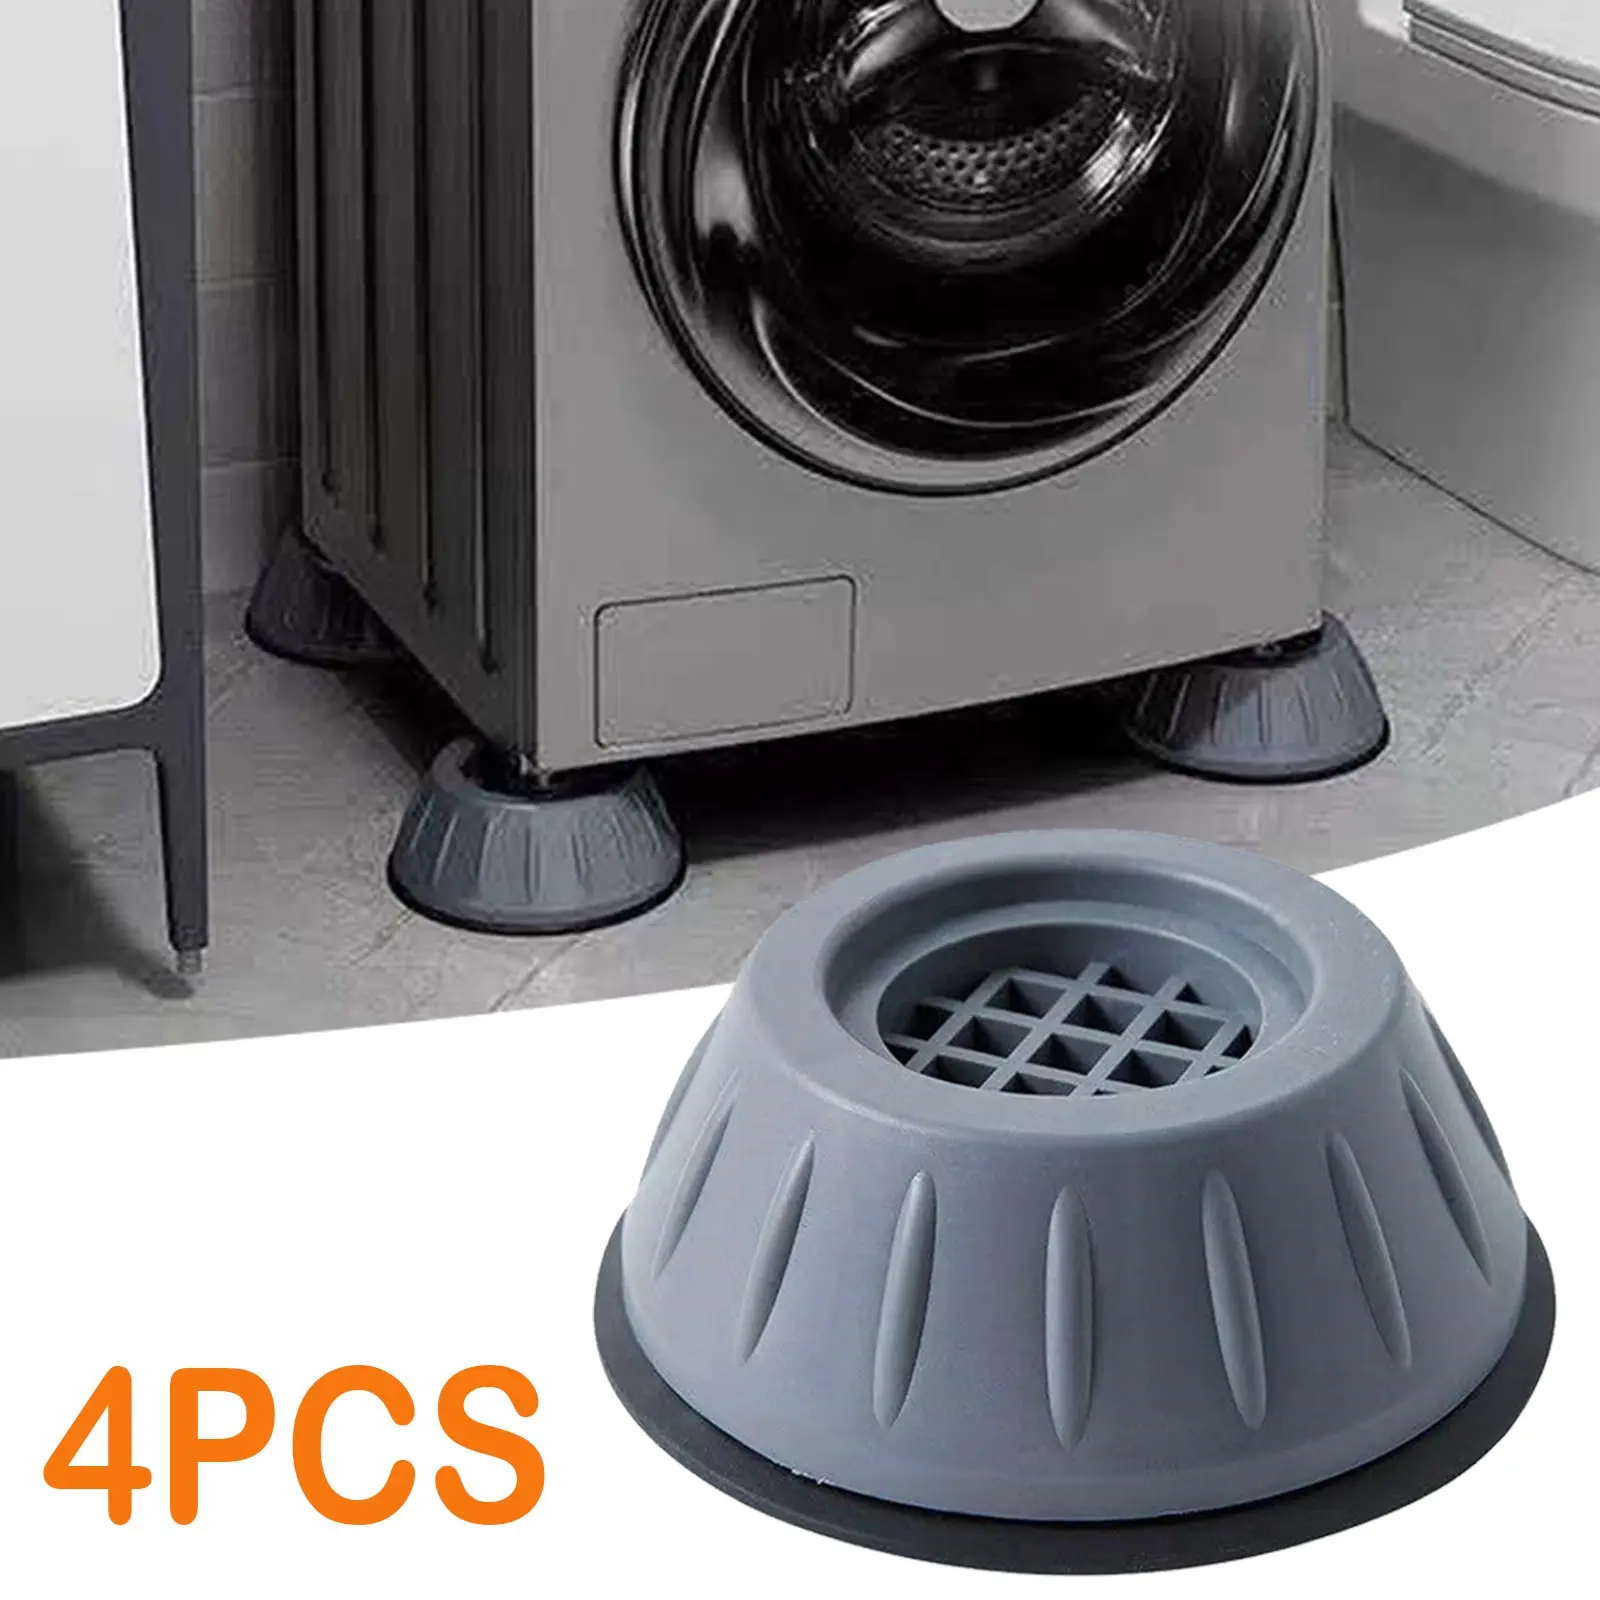 4Pcs Universal Anti-Vibration Feet Pads Washing Machine Rubber Mat Pad Dryer Refrigerator Base Fixed Non-Slip |